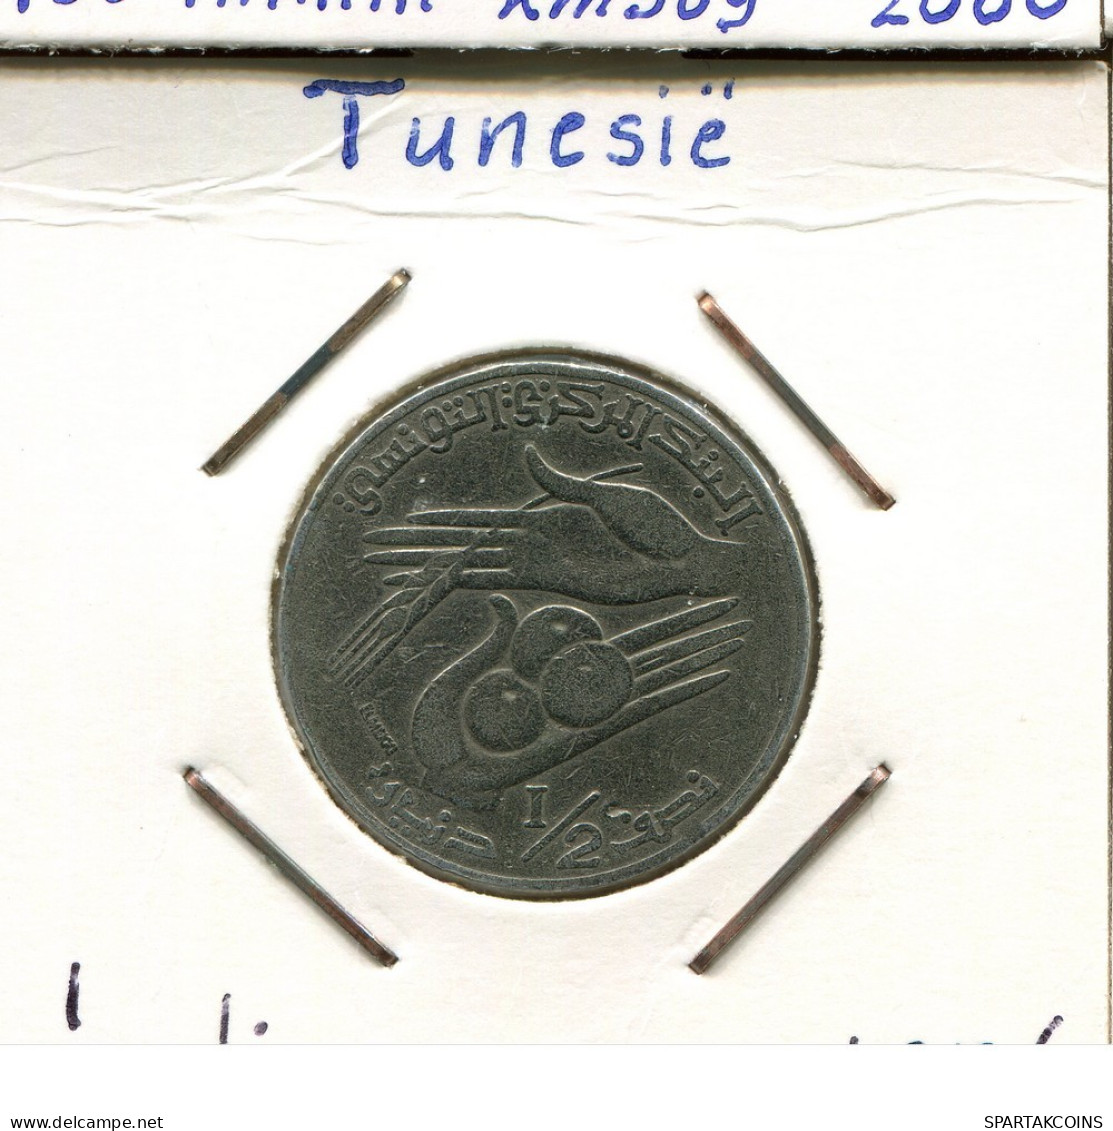 1/2 DINAR 1976 TÚNEZ TUNISIA Moneda #AP835.2.E.A - Tunisia